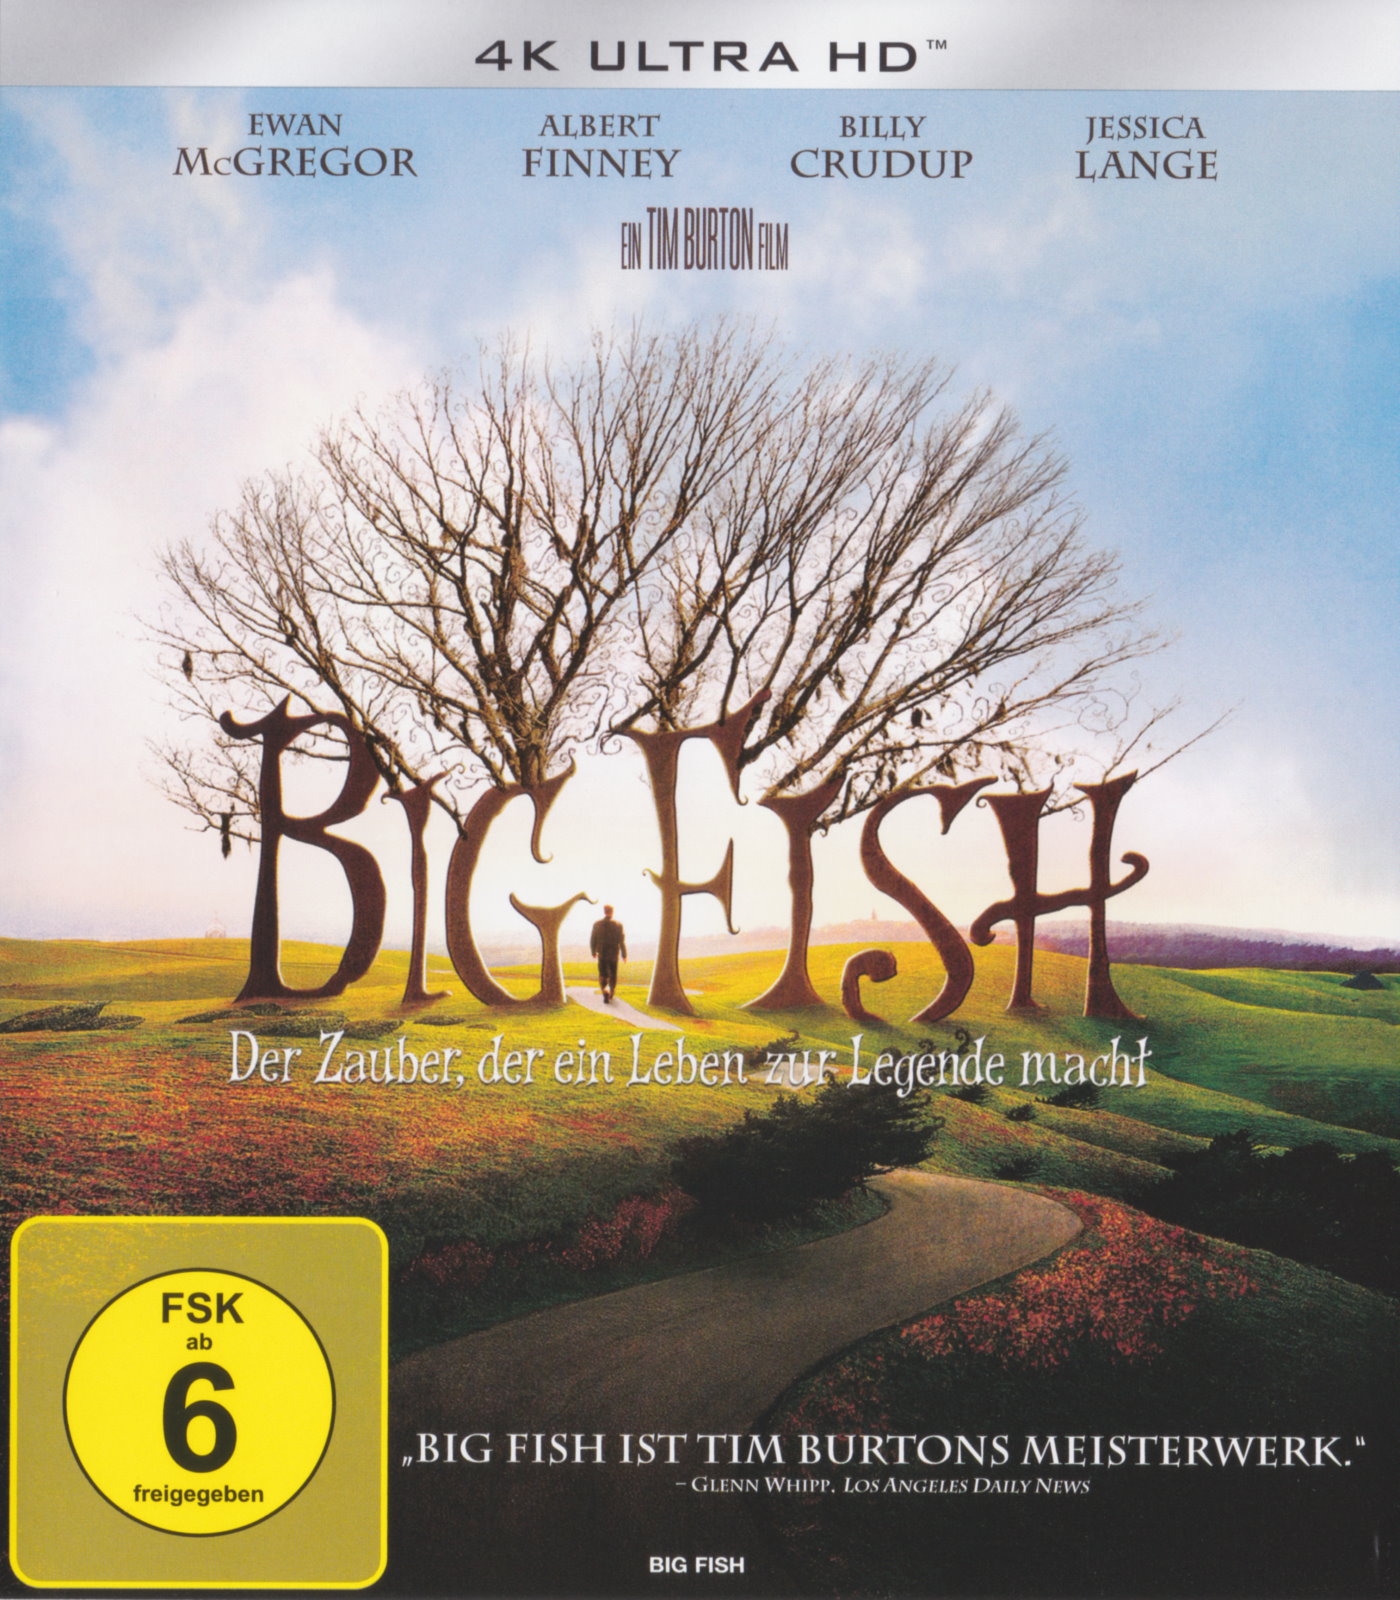 Cover - Big Fish - Der Zauber, der ein Leben zur Legende macht.jpg